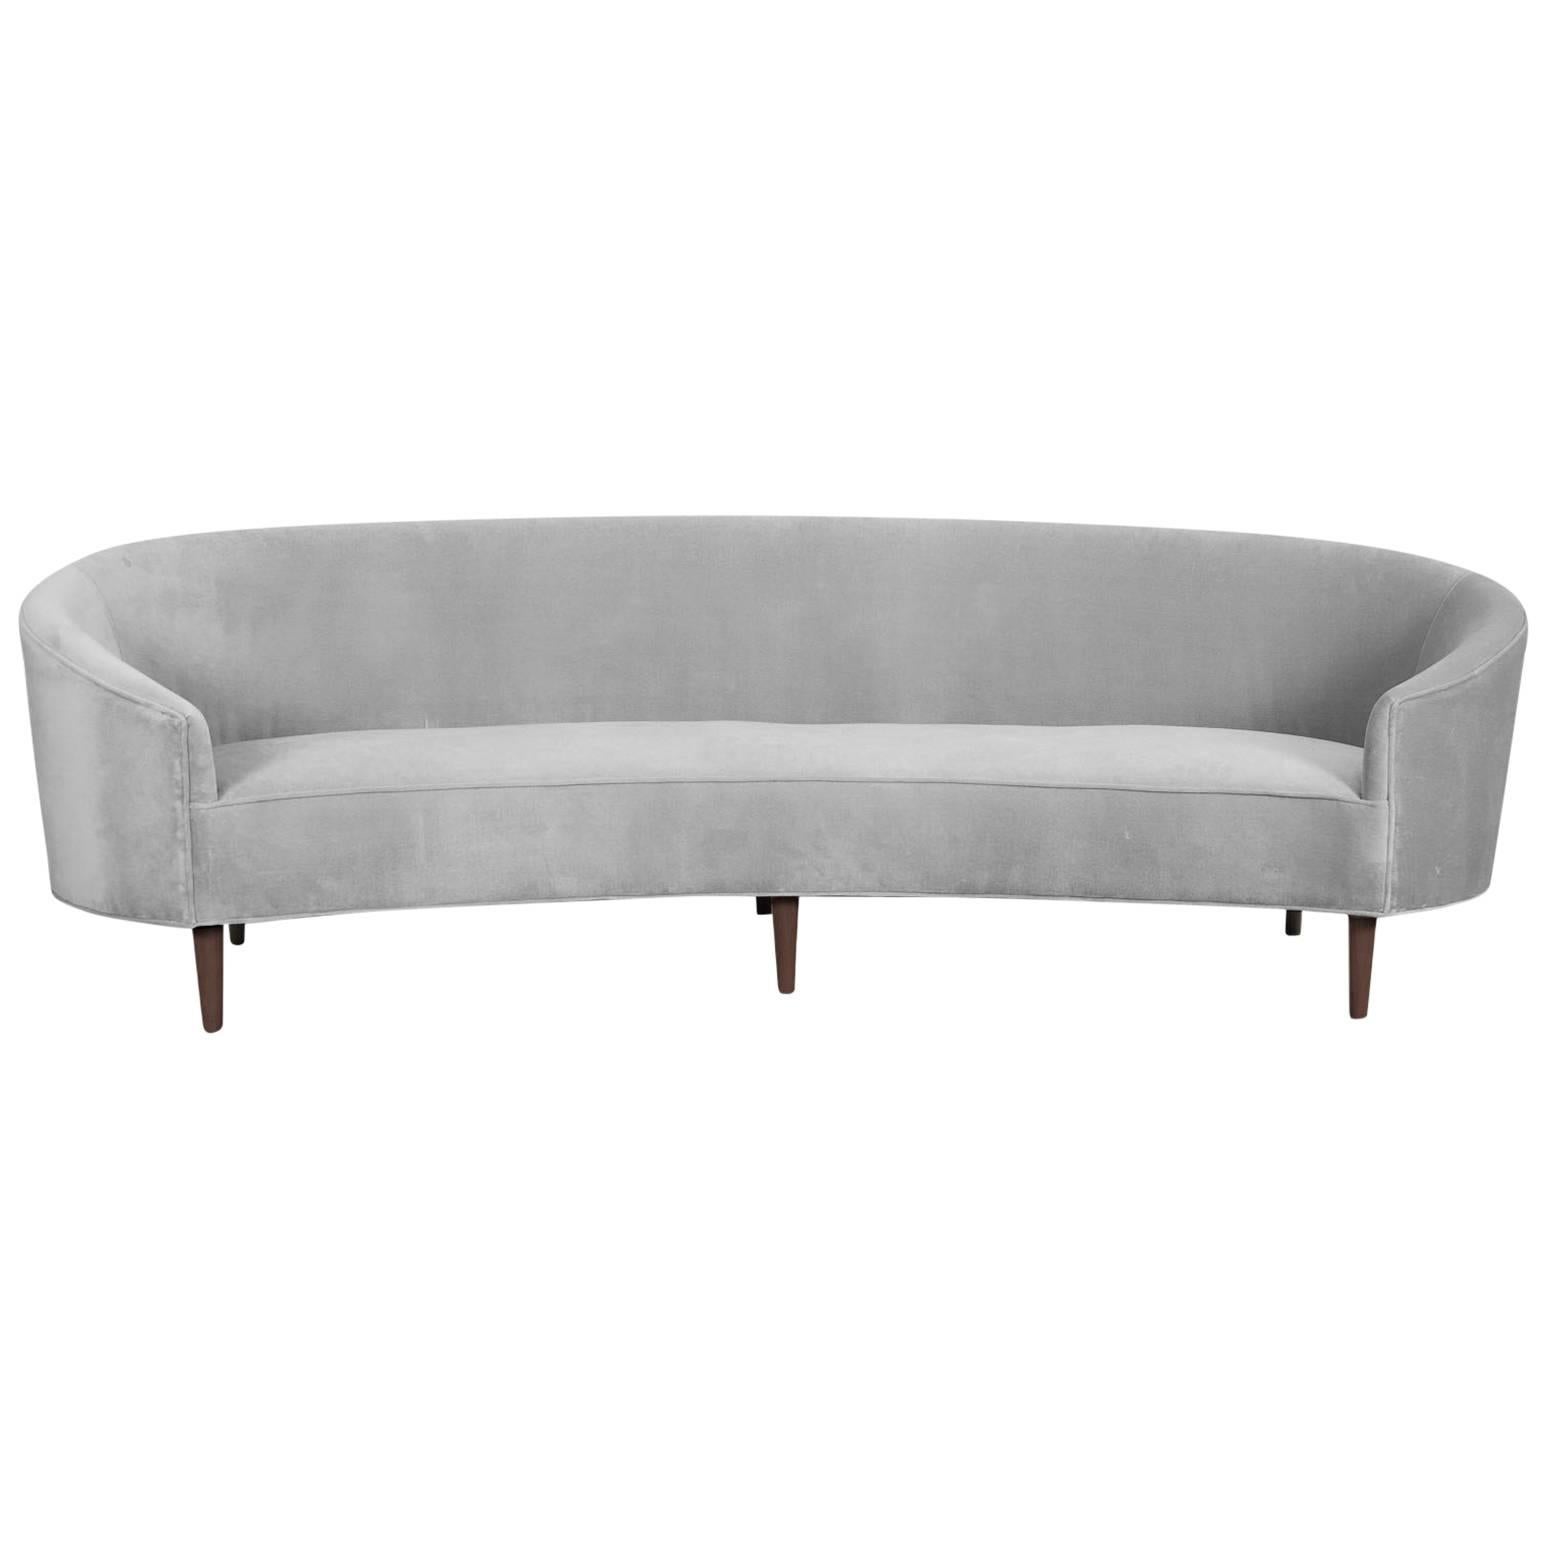 Art Deco Style Crescent Sofa with Walnut Legs in Sharkskin Velvet